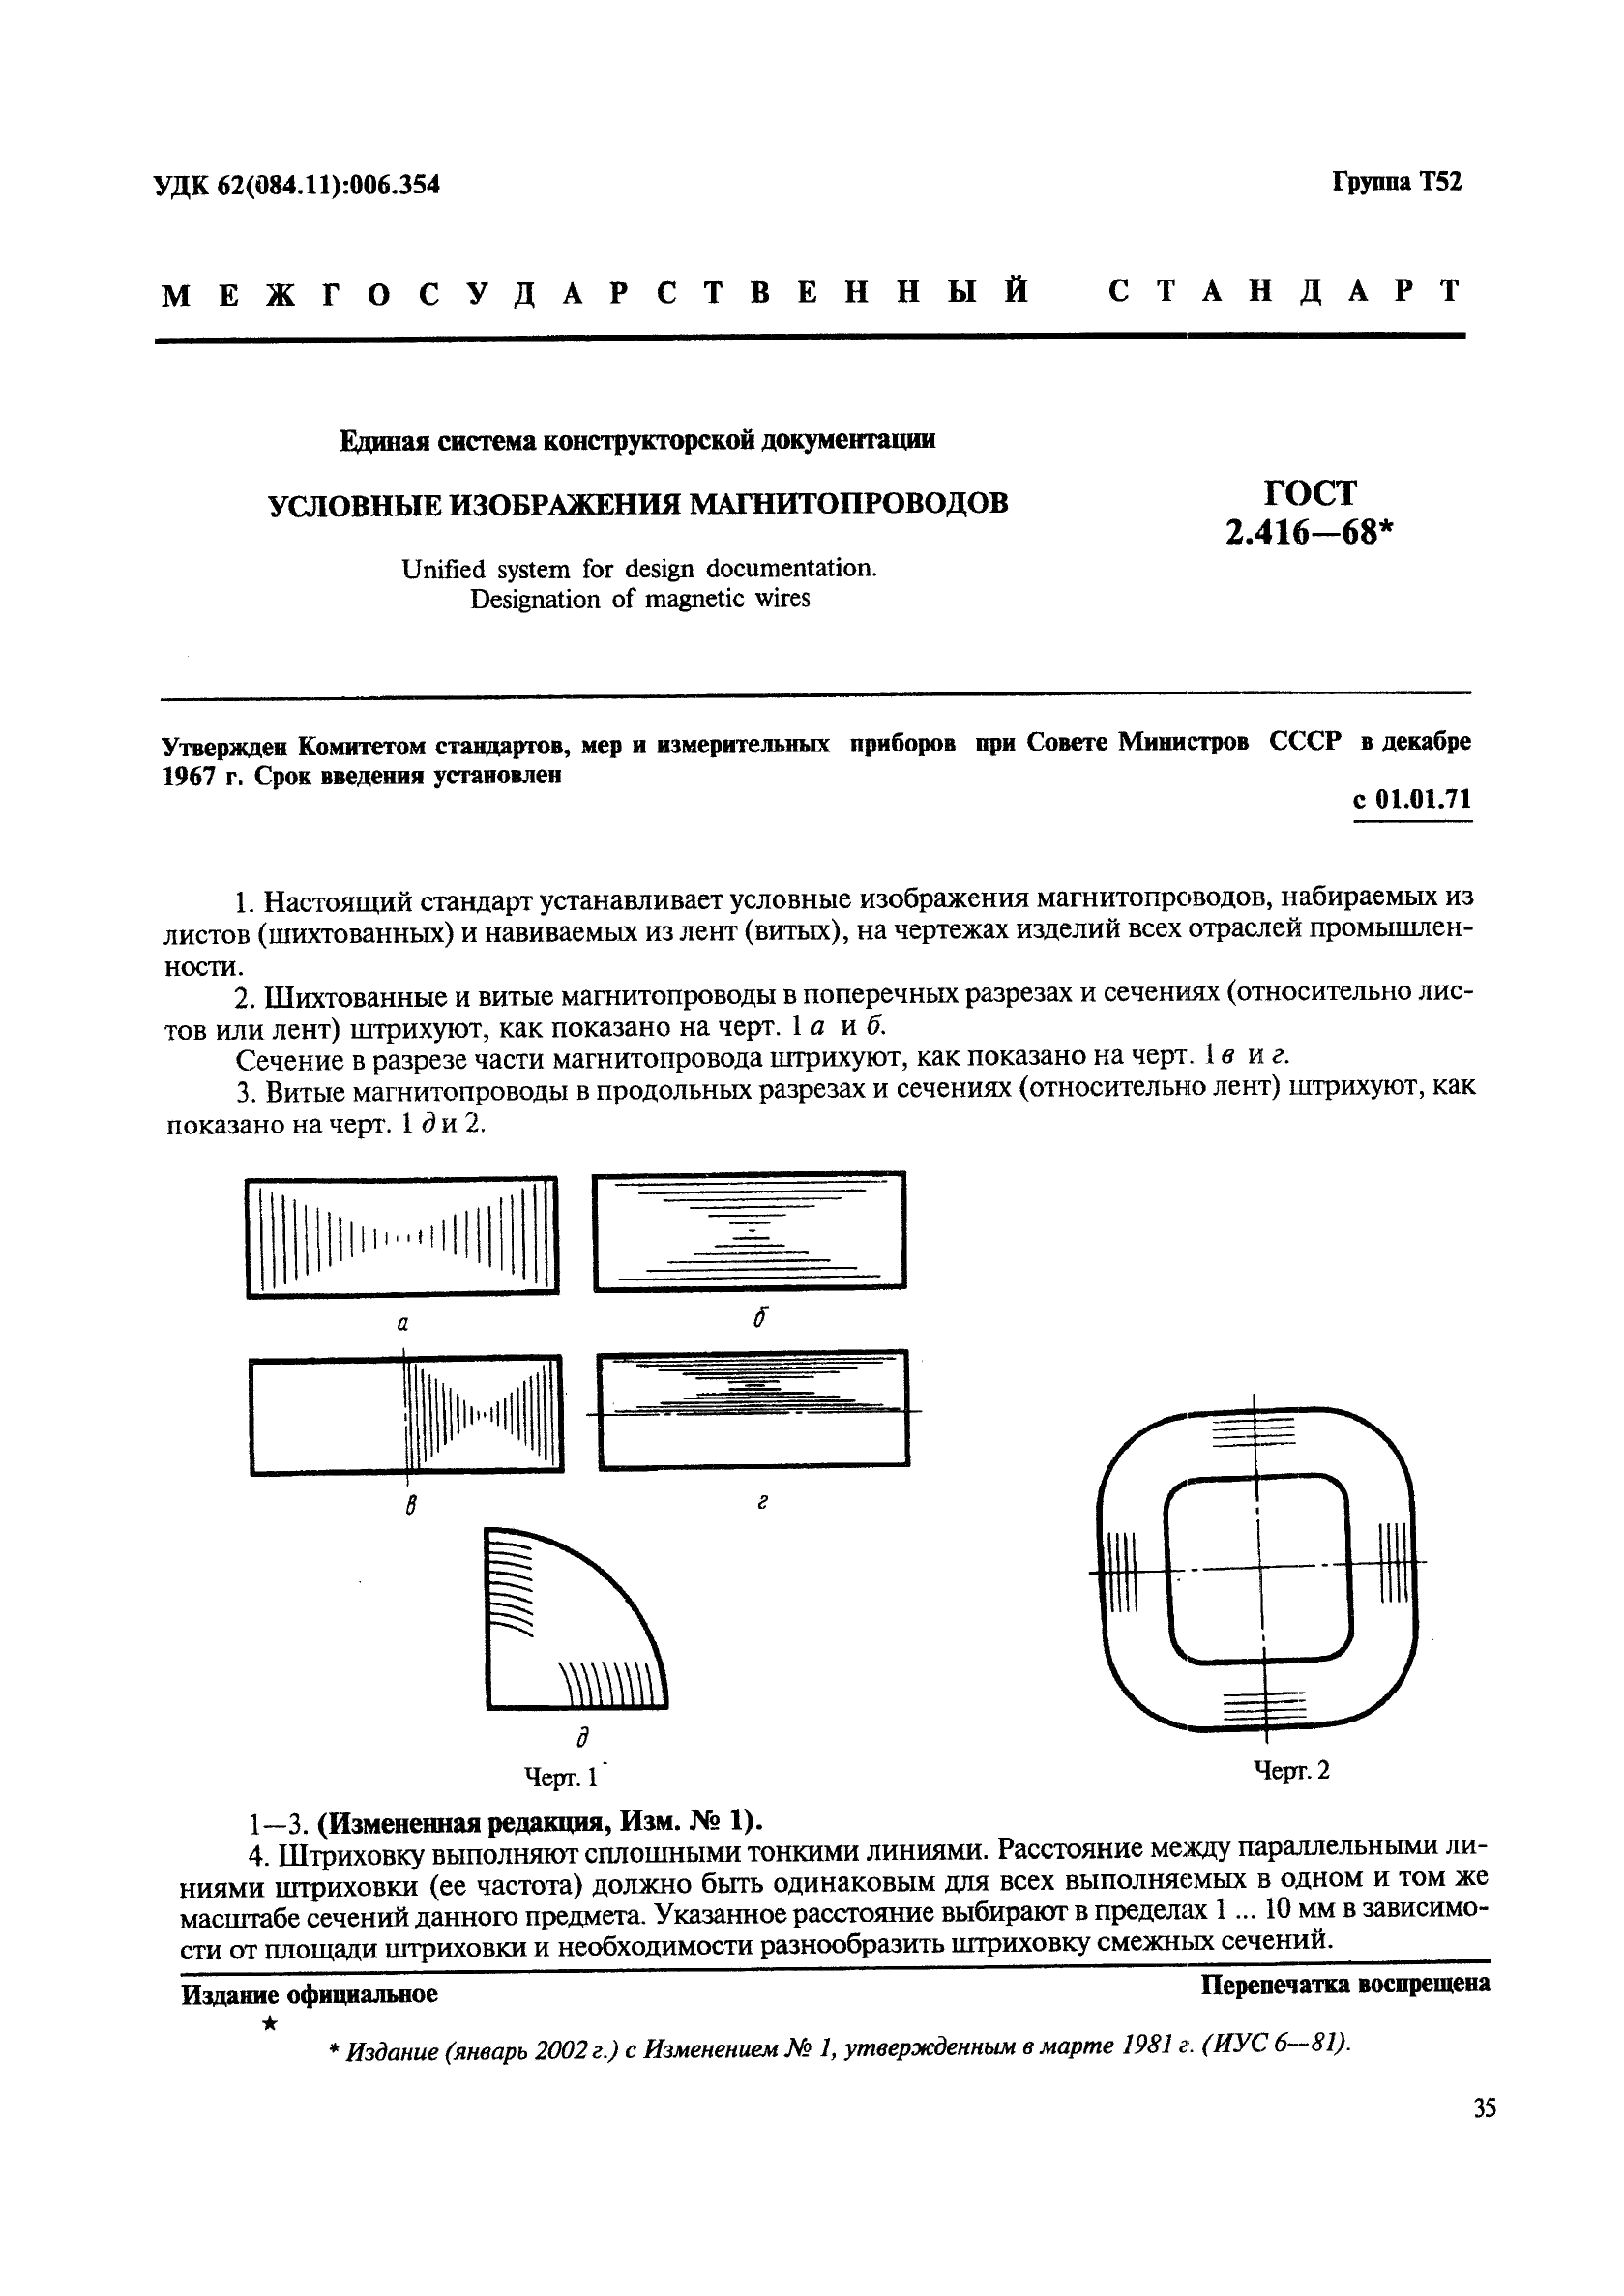 ГОСТ 2.416-68 Единая система конструкторской документации. Условные изображения магнитопроводов (фото 1 из 3)